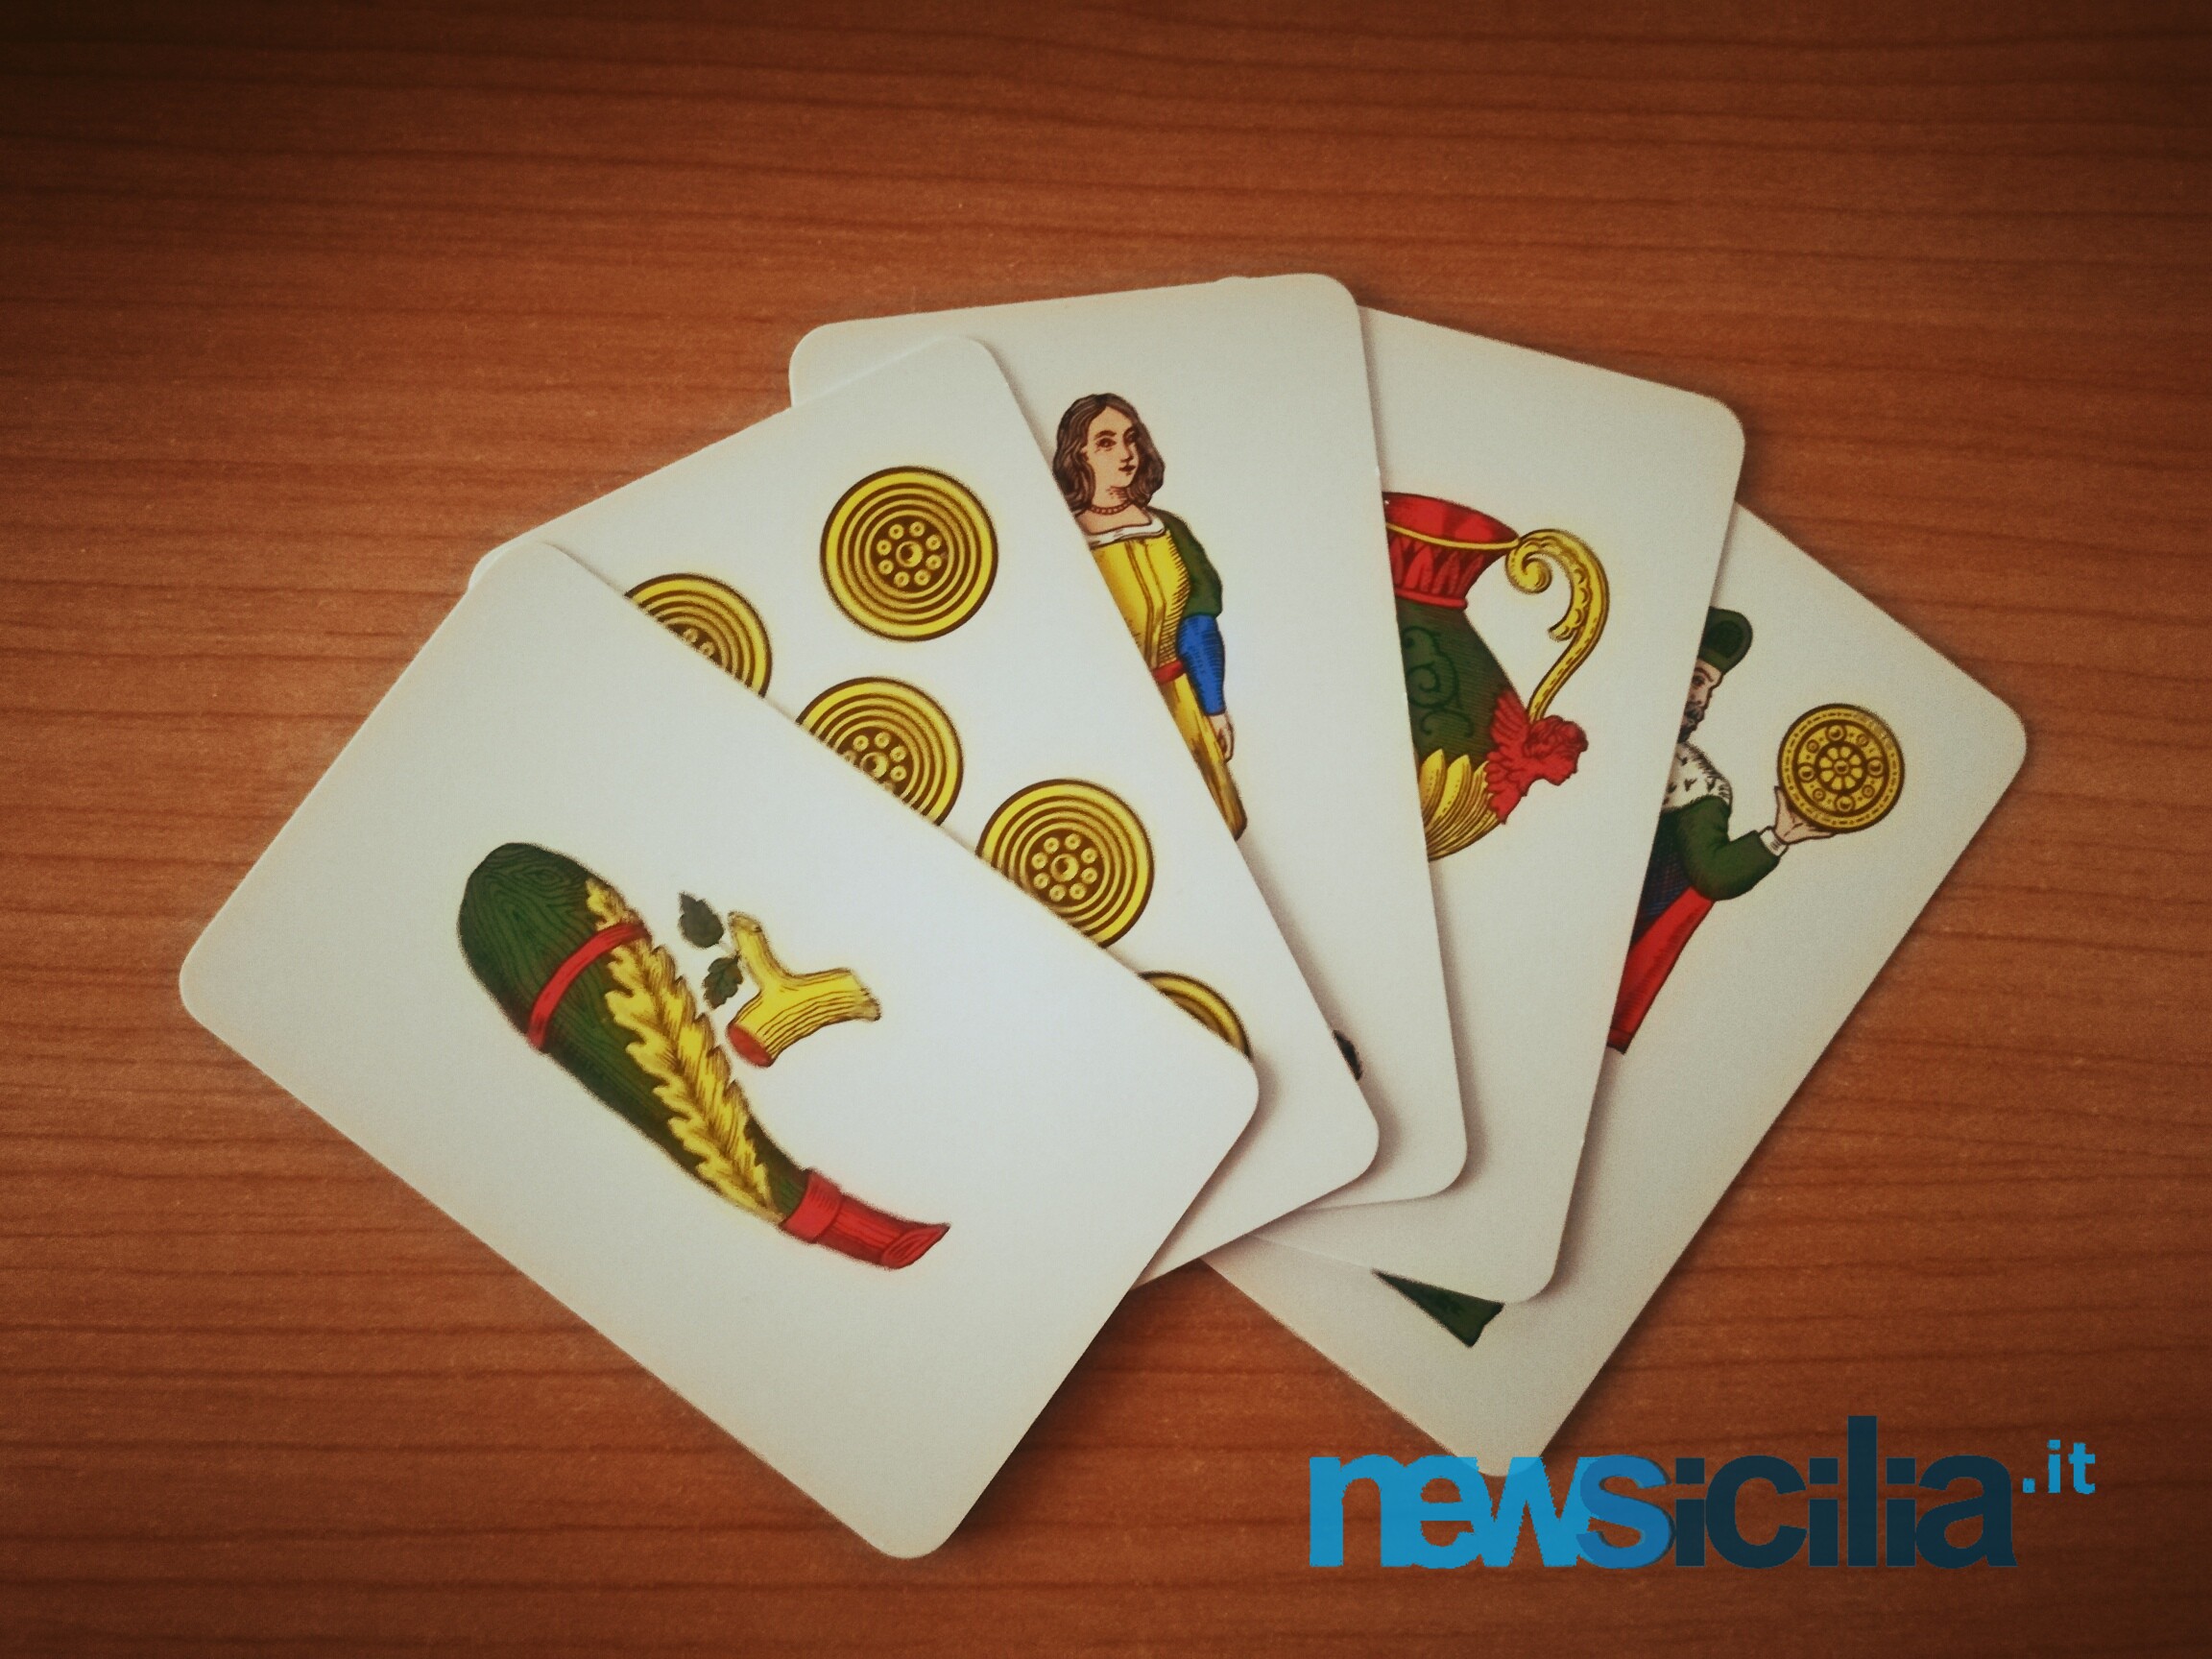 “Iucamu ‘e catti?”, ecco l’origine delle carte siciliane: nelle nostre mani un pezzo di storia